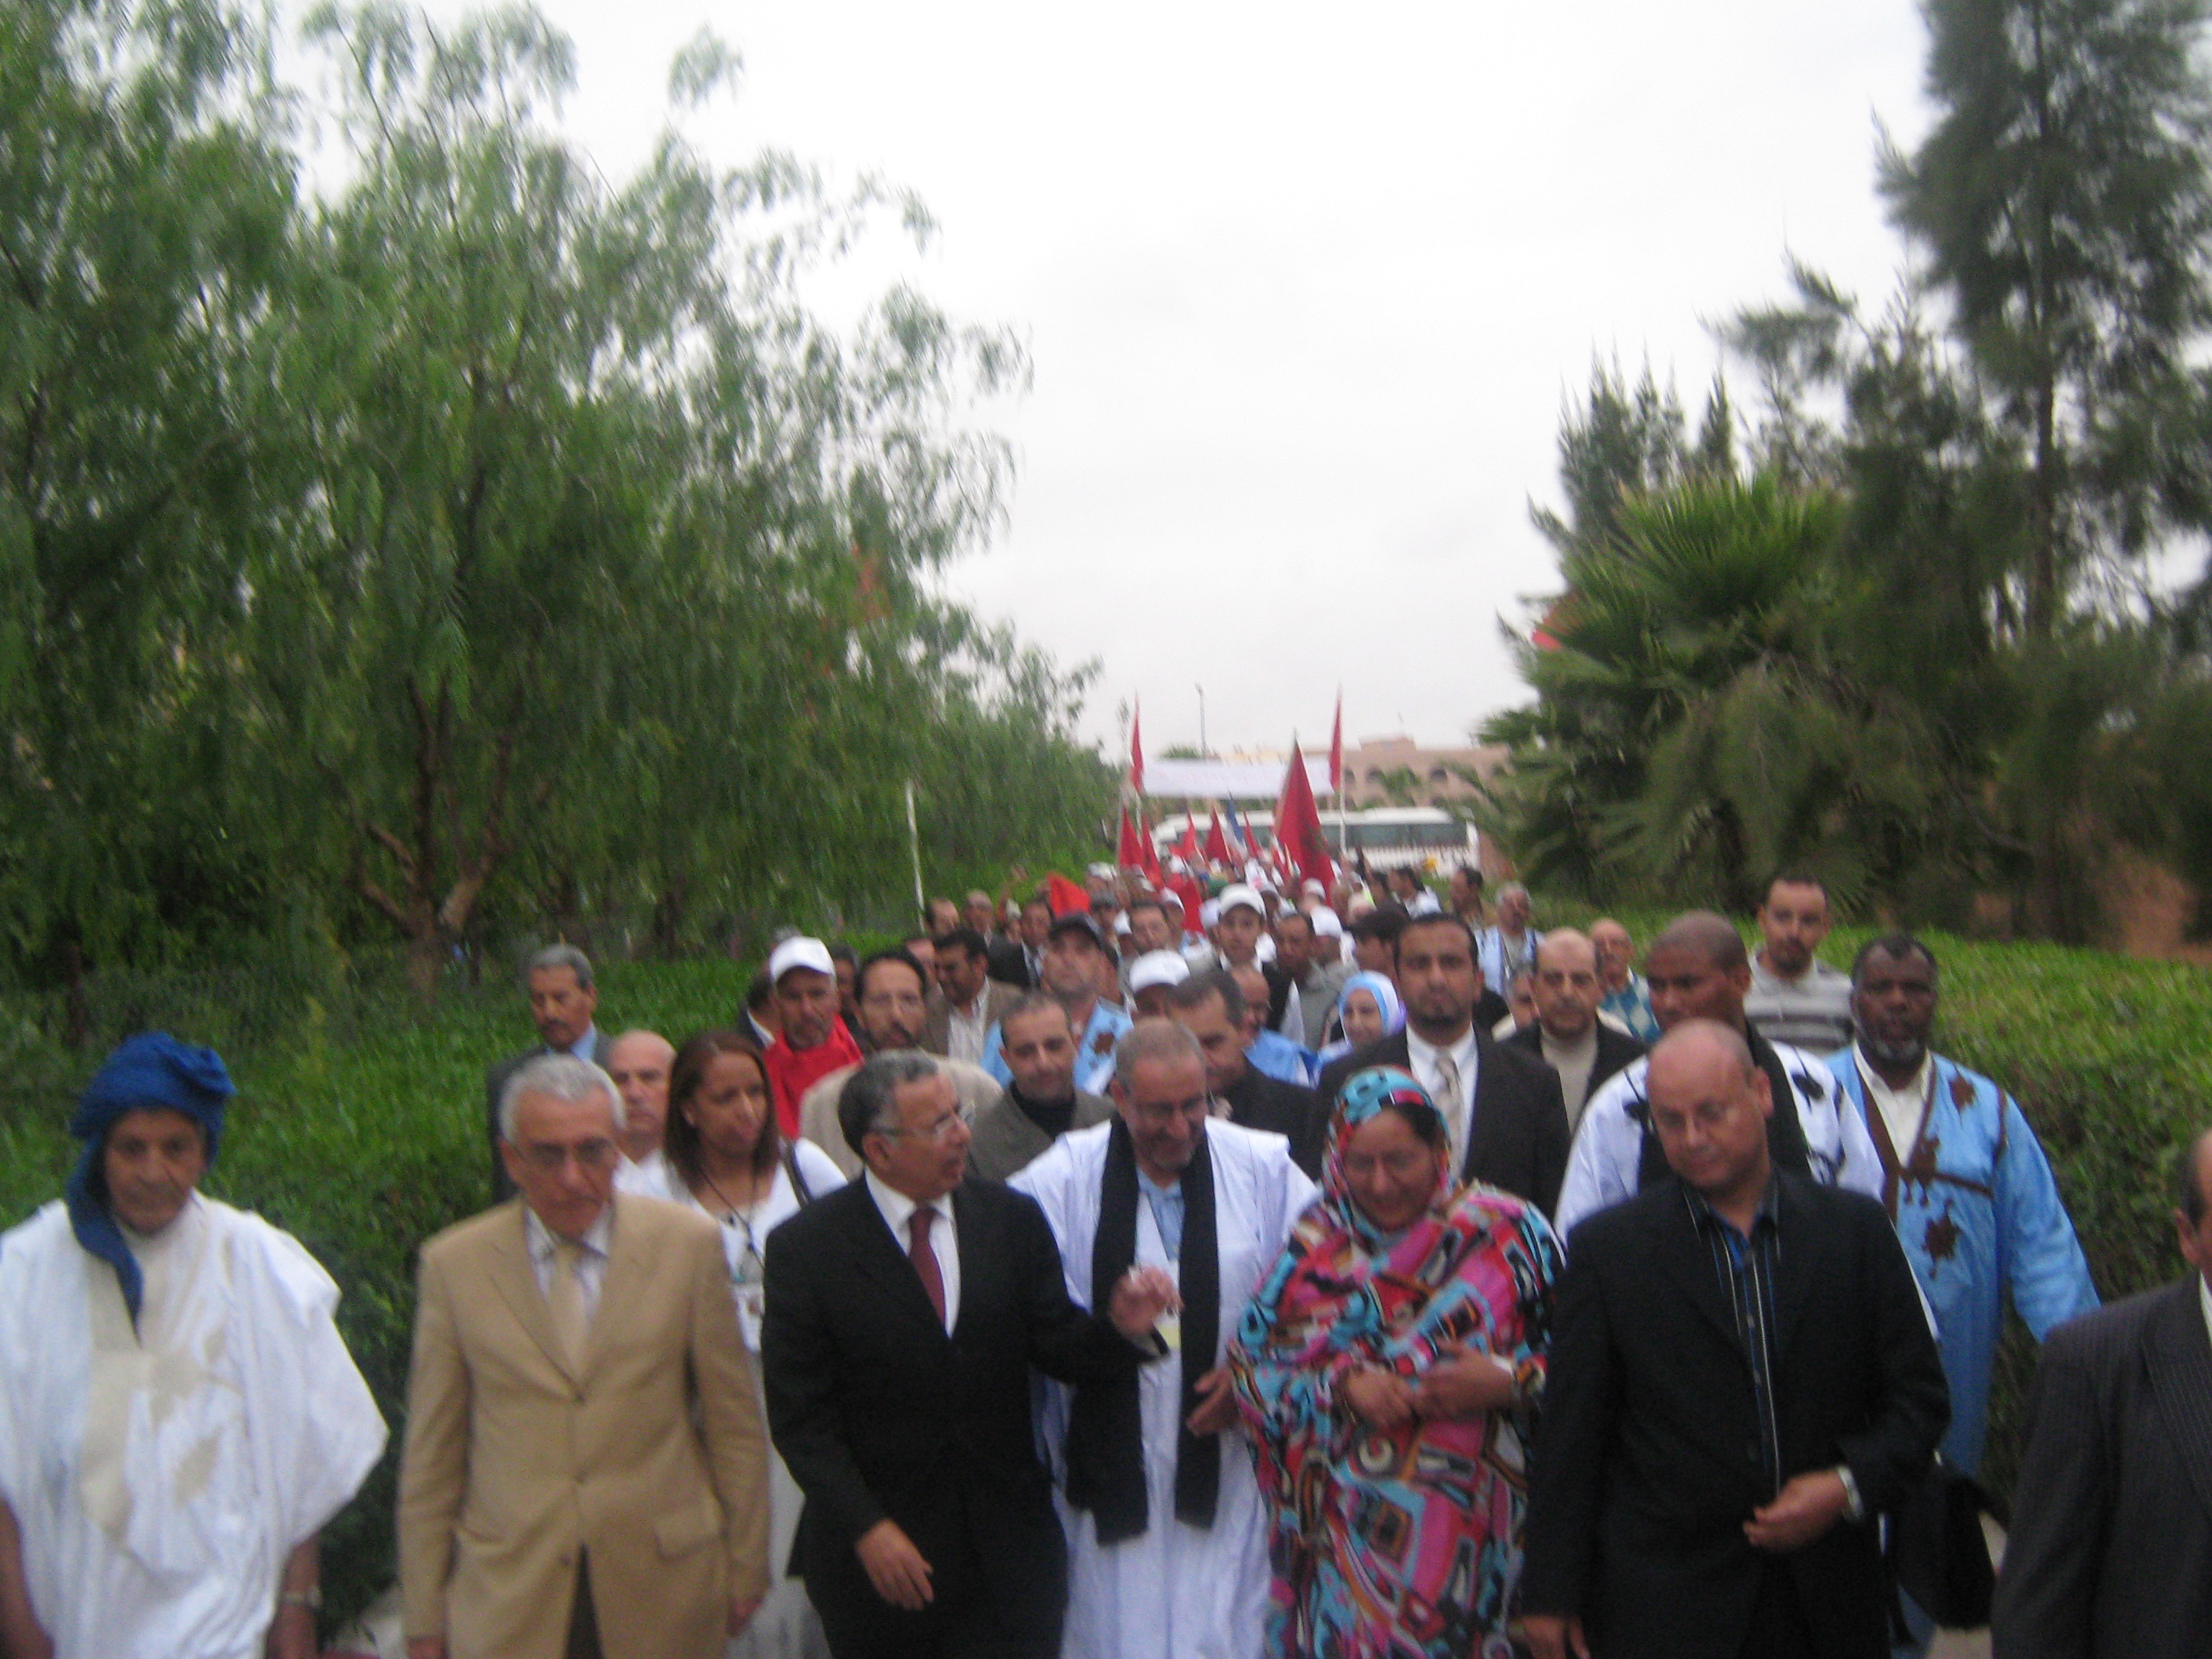 قافلة السلام لتأييد الحكم الذاتي بالأقاليم الجنوبية المغربية تحل بتيزنيت +صور 1006170848591101736243024